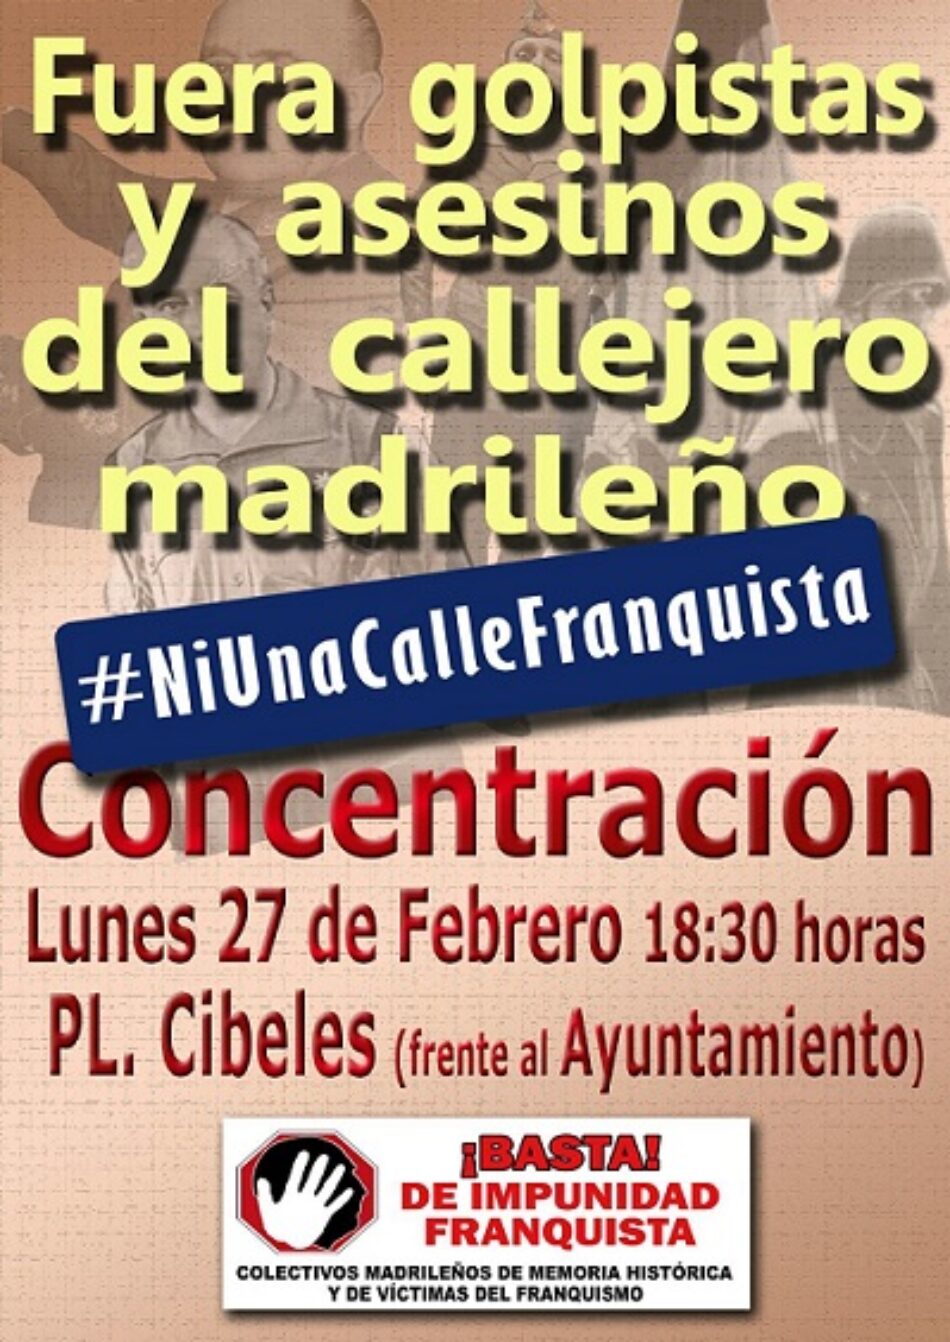 Protesta para la retirada de simbología franquista y el cumplimiento de la Ley de Memoria Histórica